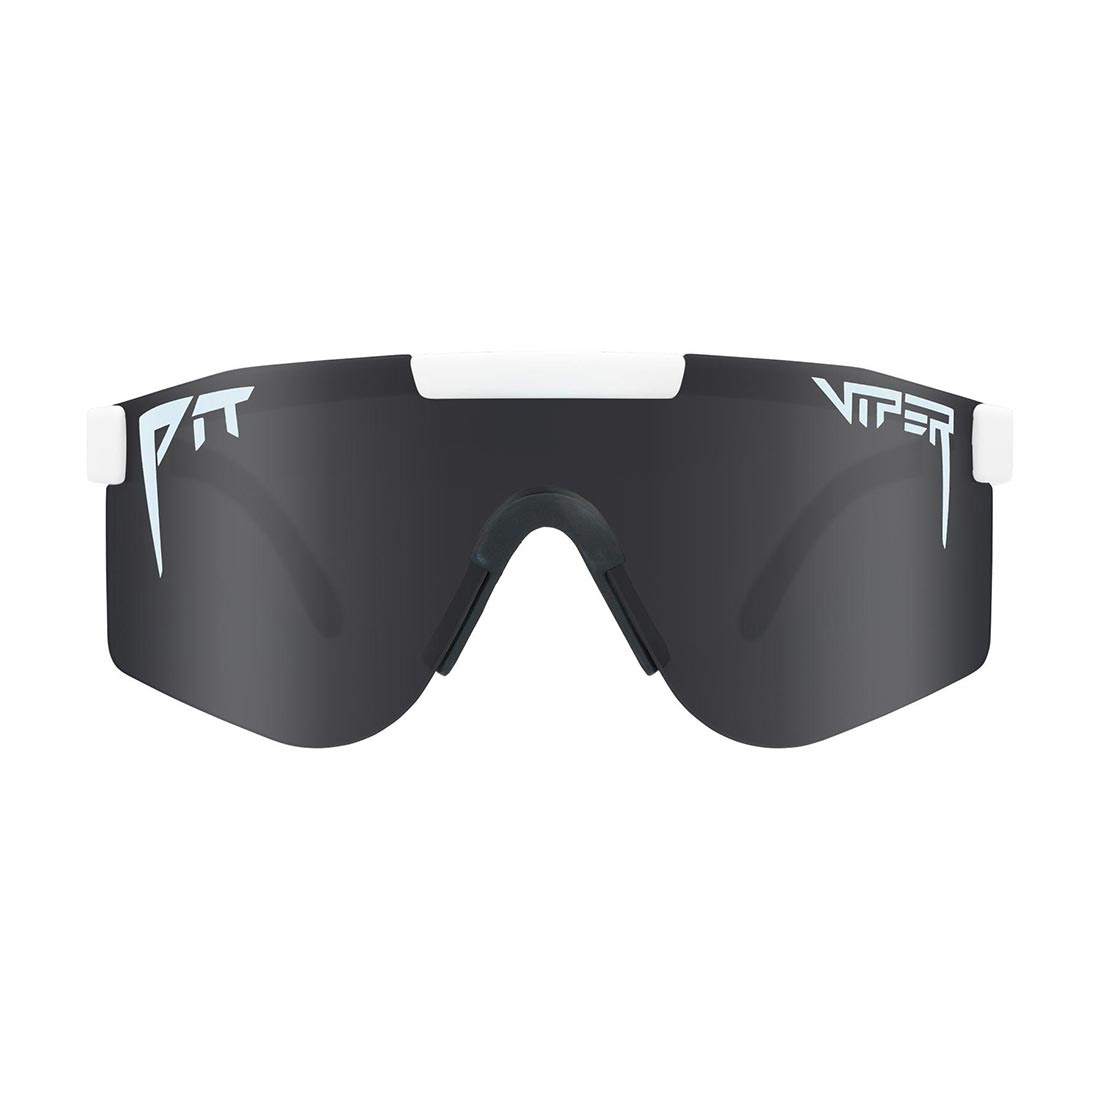 Pit Viper The Originals Polarized Sunglasses